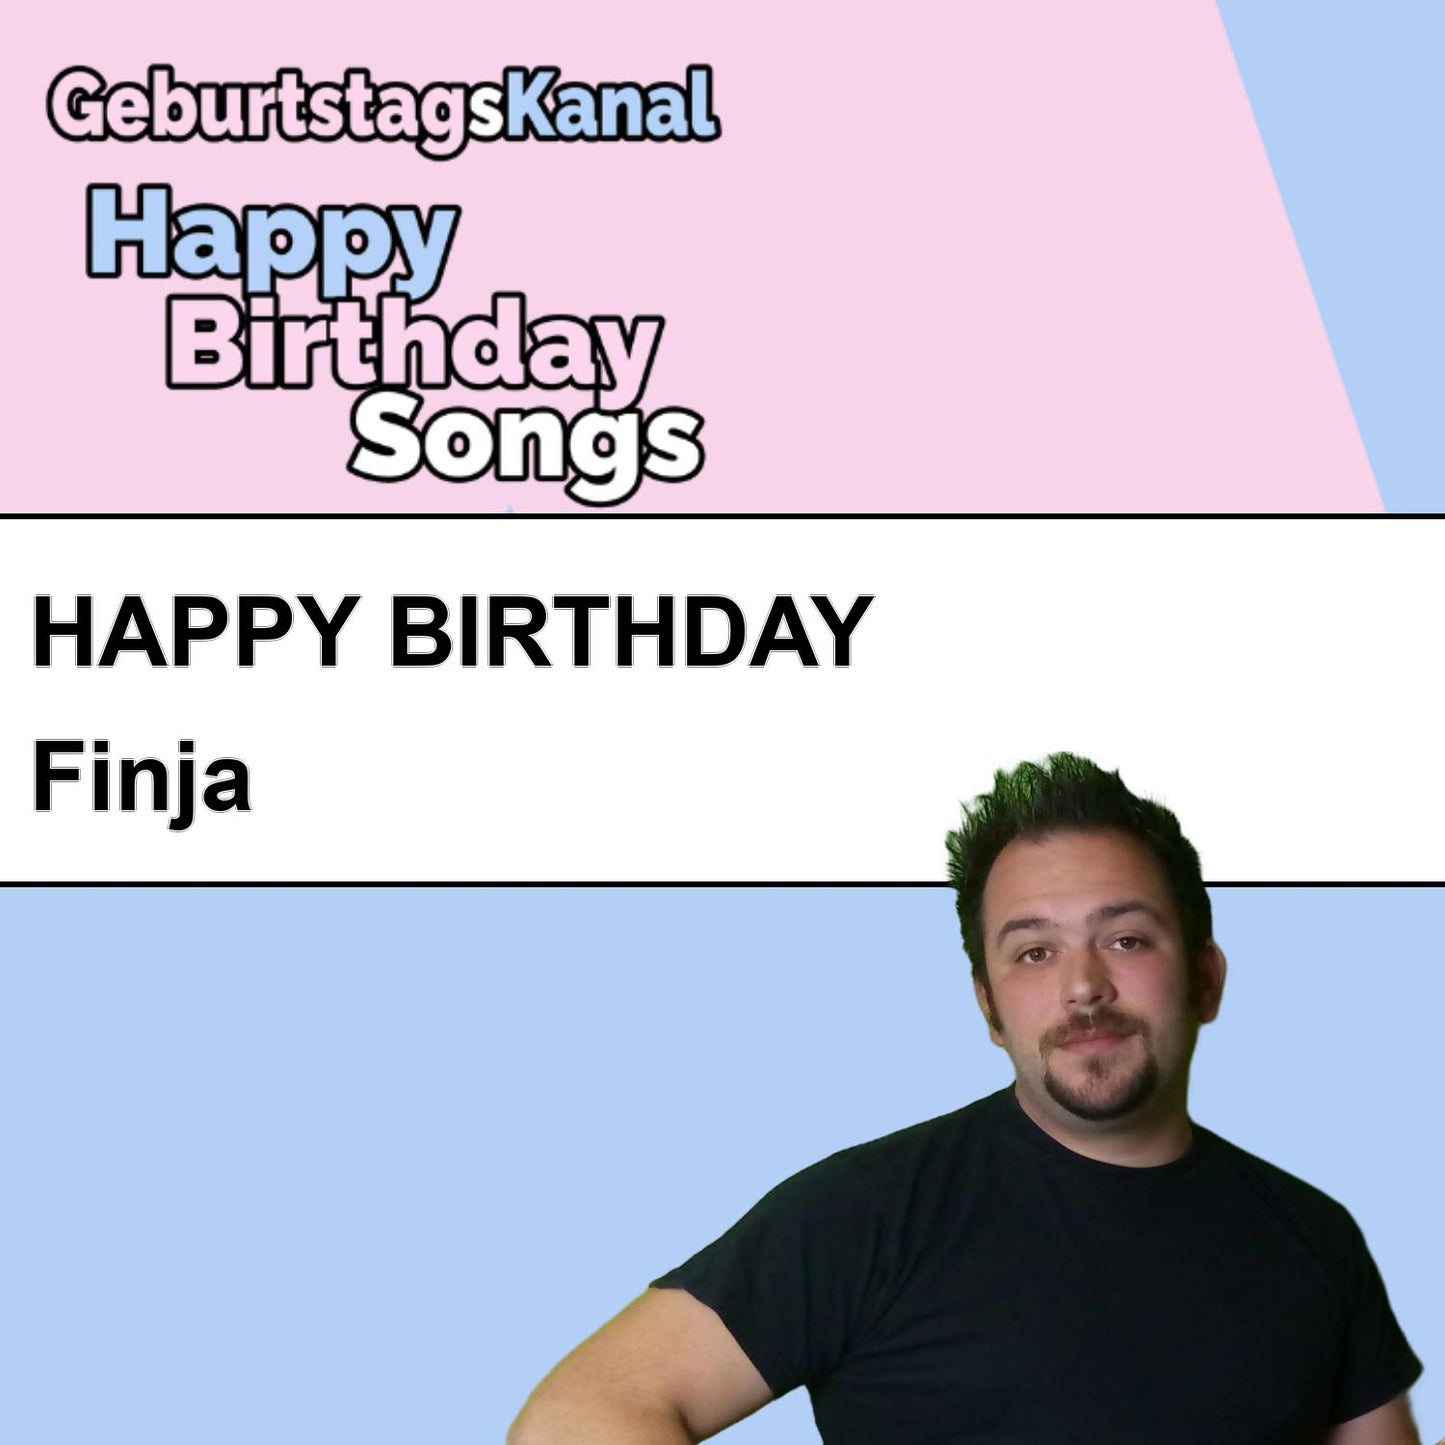 Produktbild Happy Birthday to you Finja mit Wunschgrußbotschaft